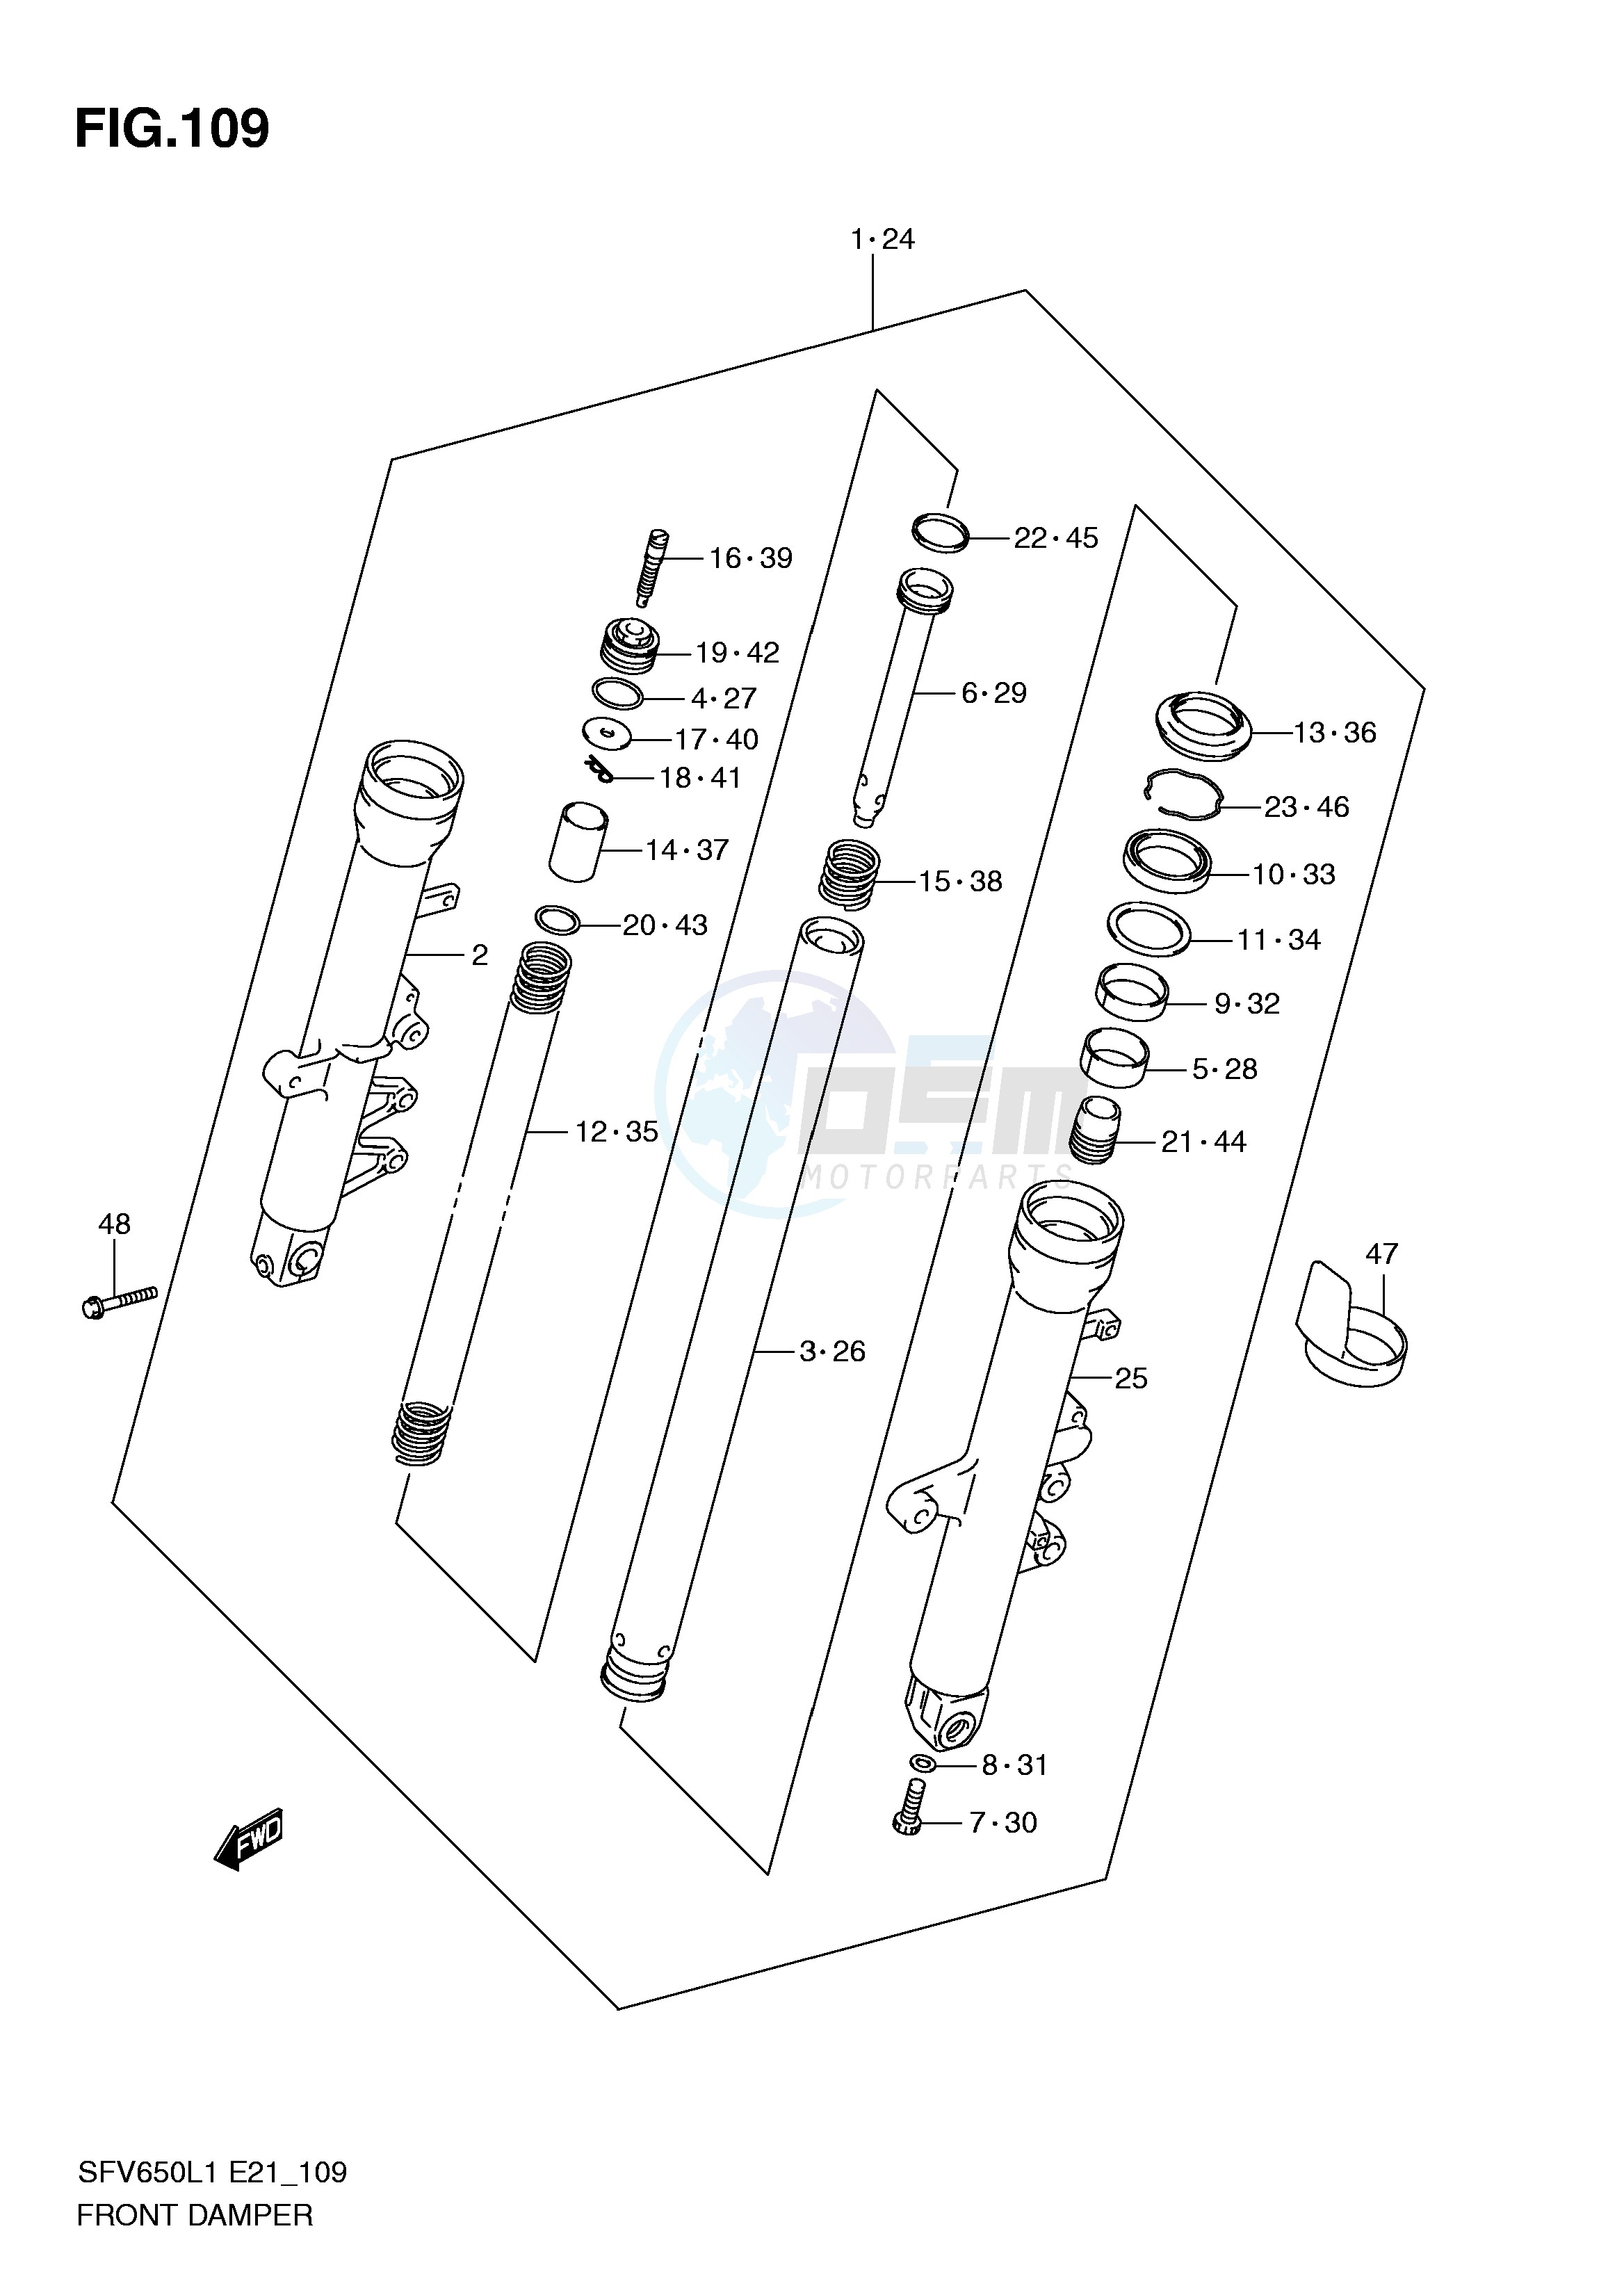 FRONT DAMPER (SFV650L1 E21) blueprint